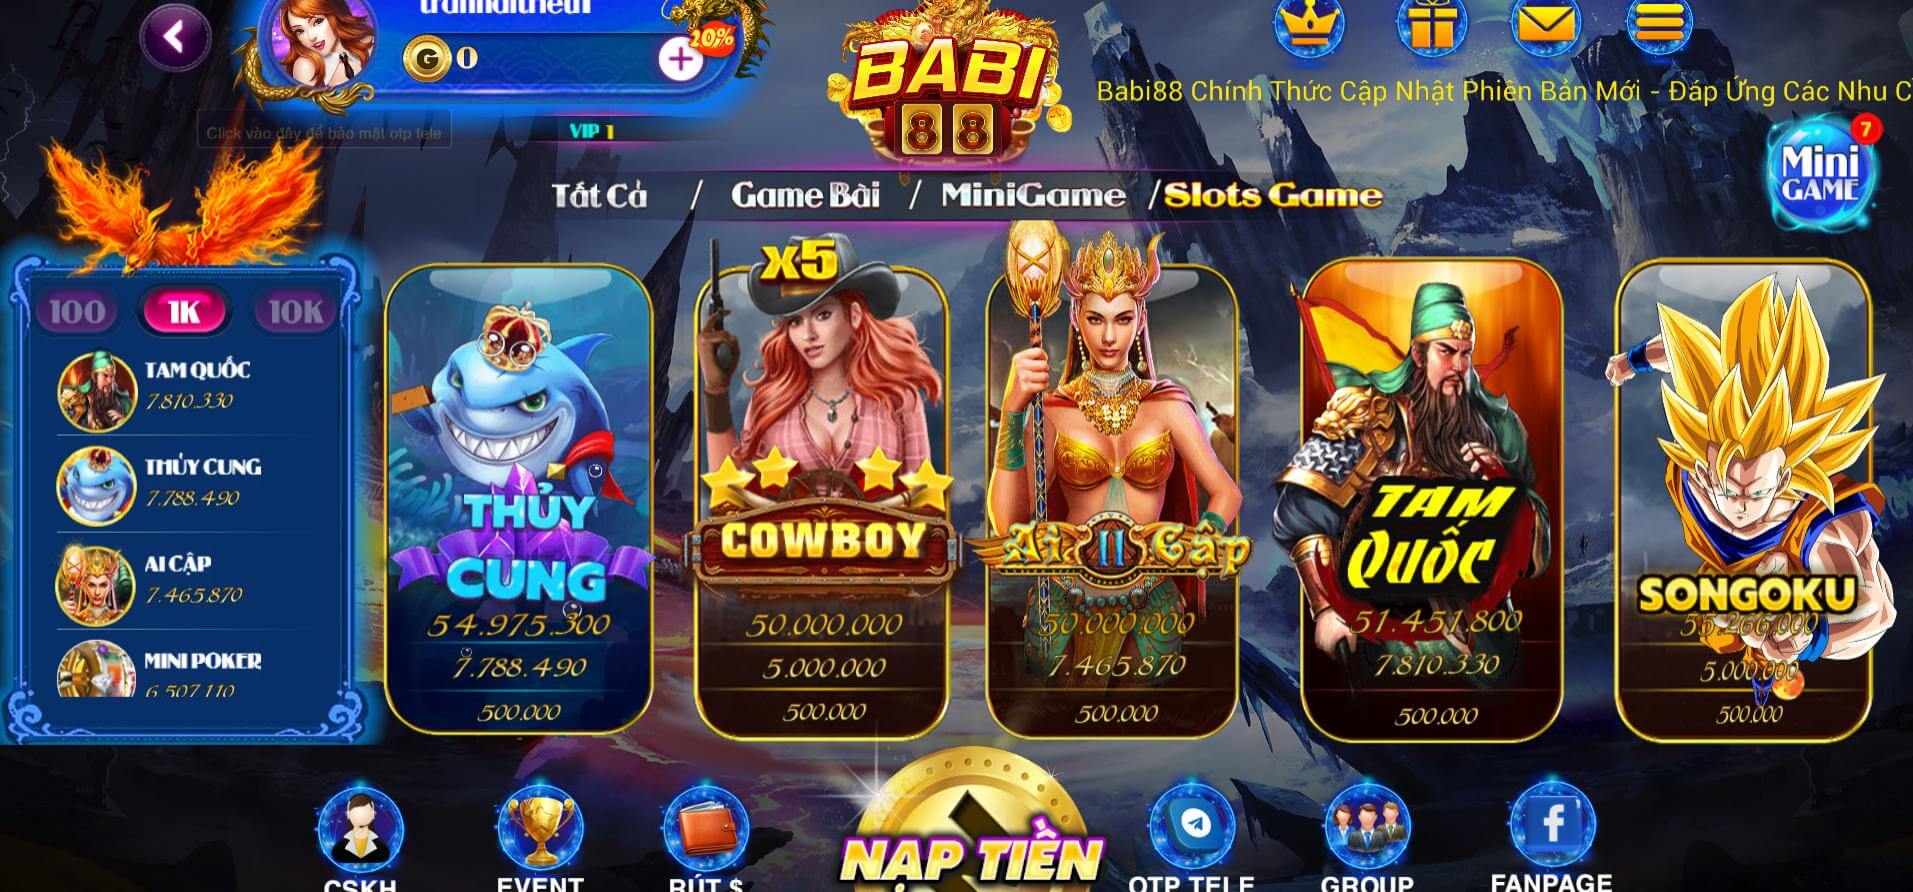 Tổng hợp các hình thức cá cược tại cổng game Babi88 